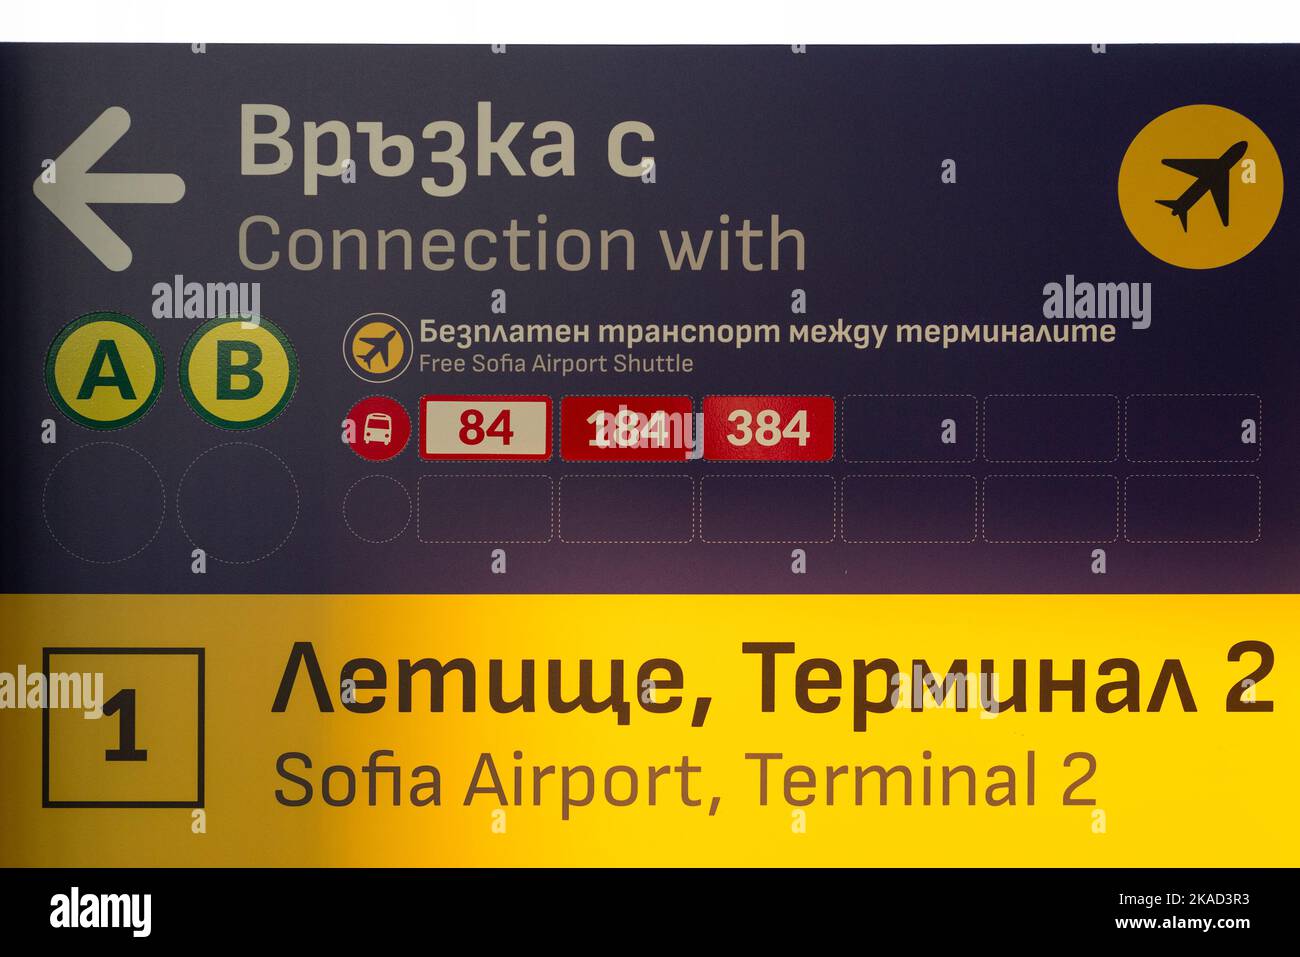 Sofia Airport Terminal 2 kostenloses Shuttle-Informationsschild, Sofia, Bulgarien, Osteuropa, Balkan, EU Stockfoto